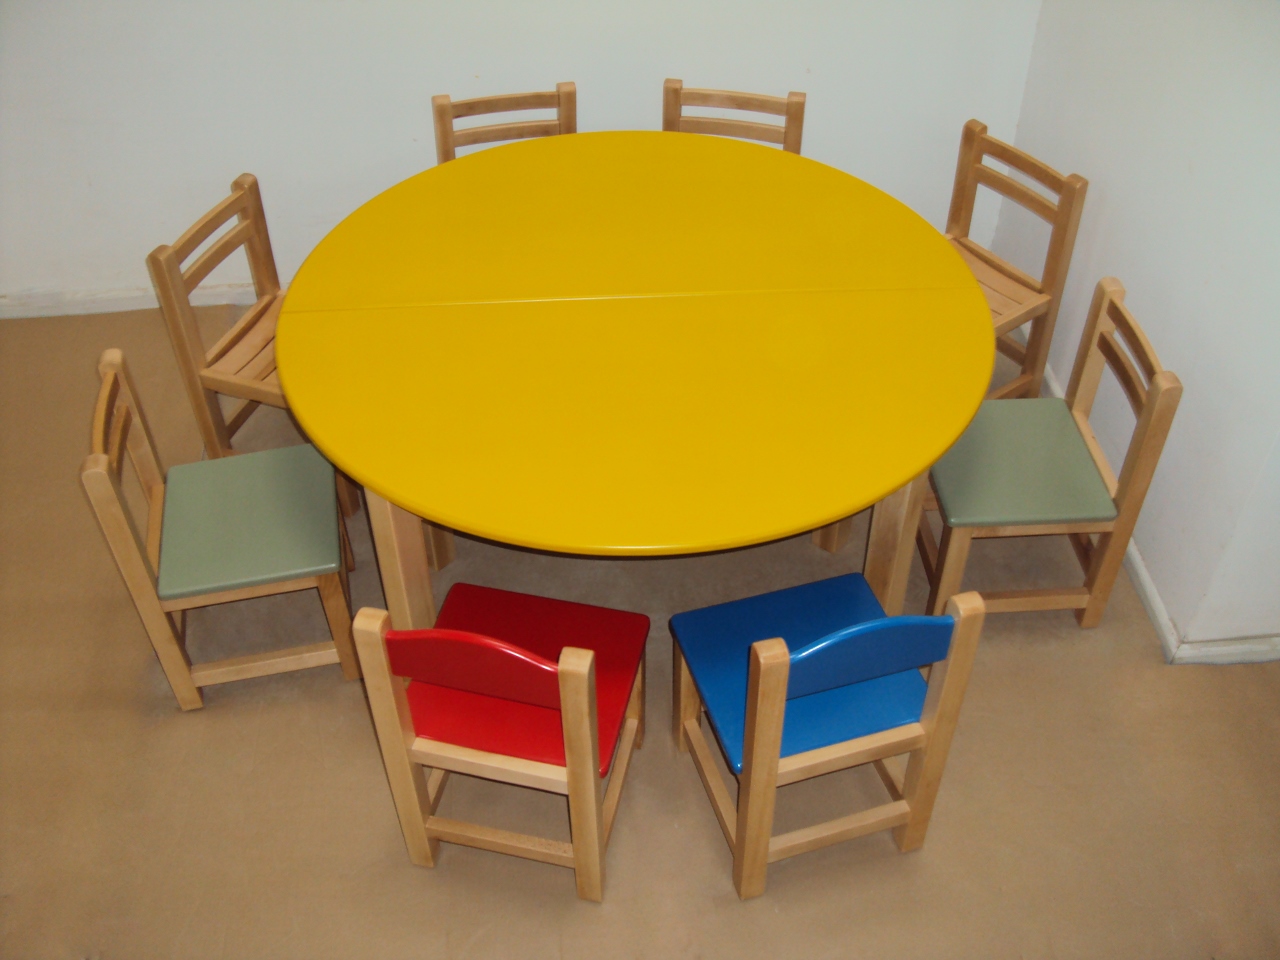 столы трансформеры для детей дошкольного возраста